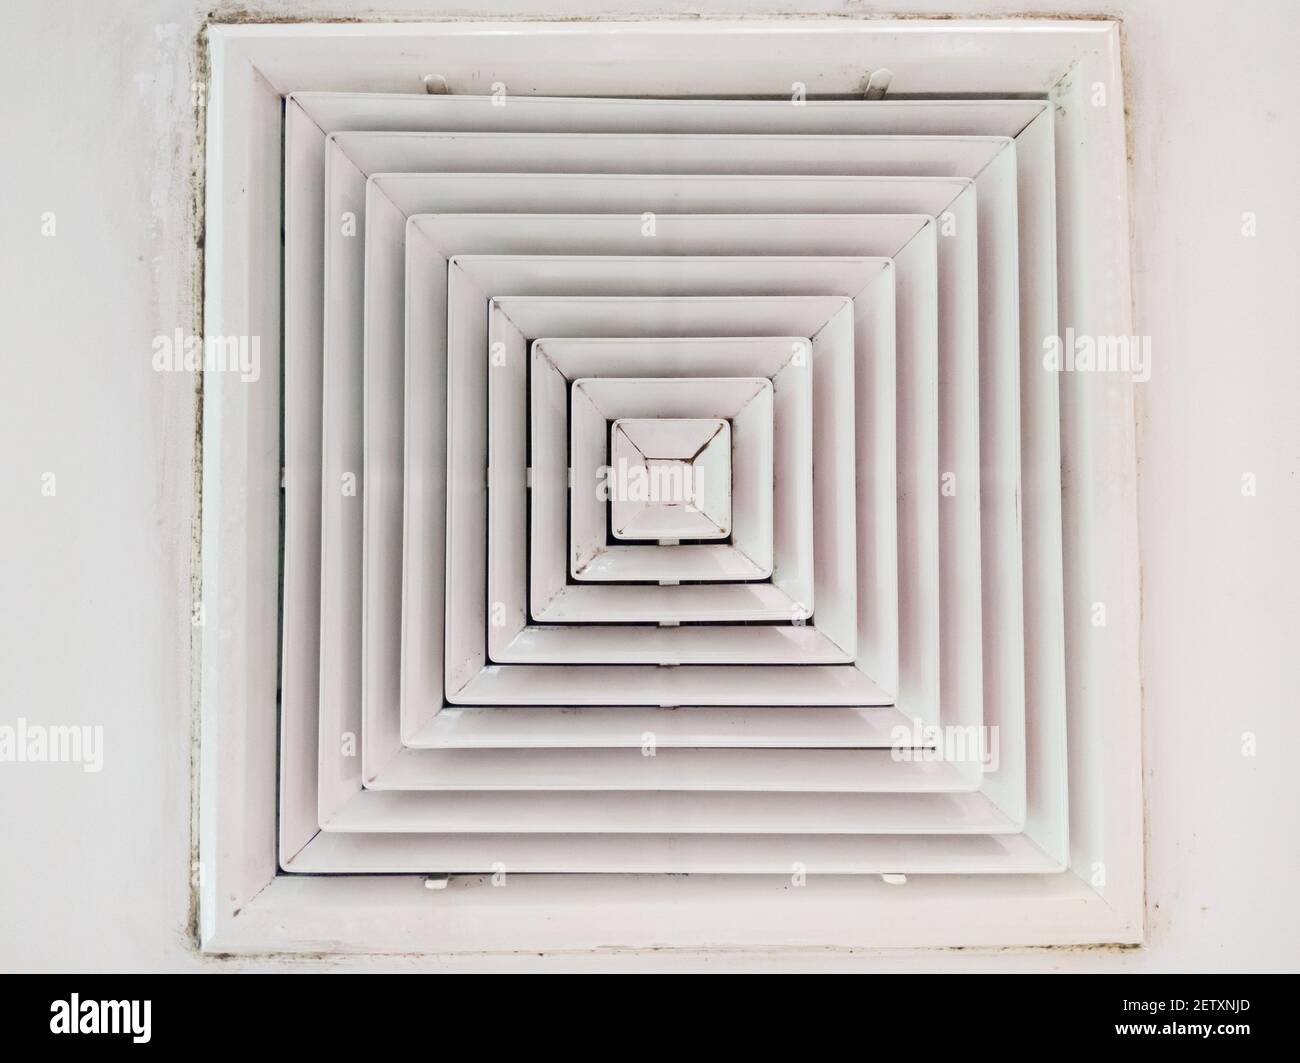 Cuadrado cubierta de rejilla de conducto de aire acondicionado blanca  contra el suelo con alfombra marrón Fotografía de stock - Alamy